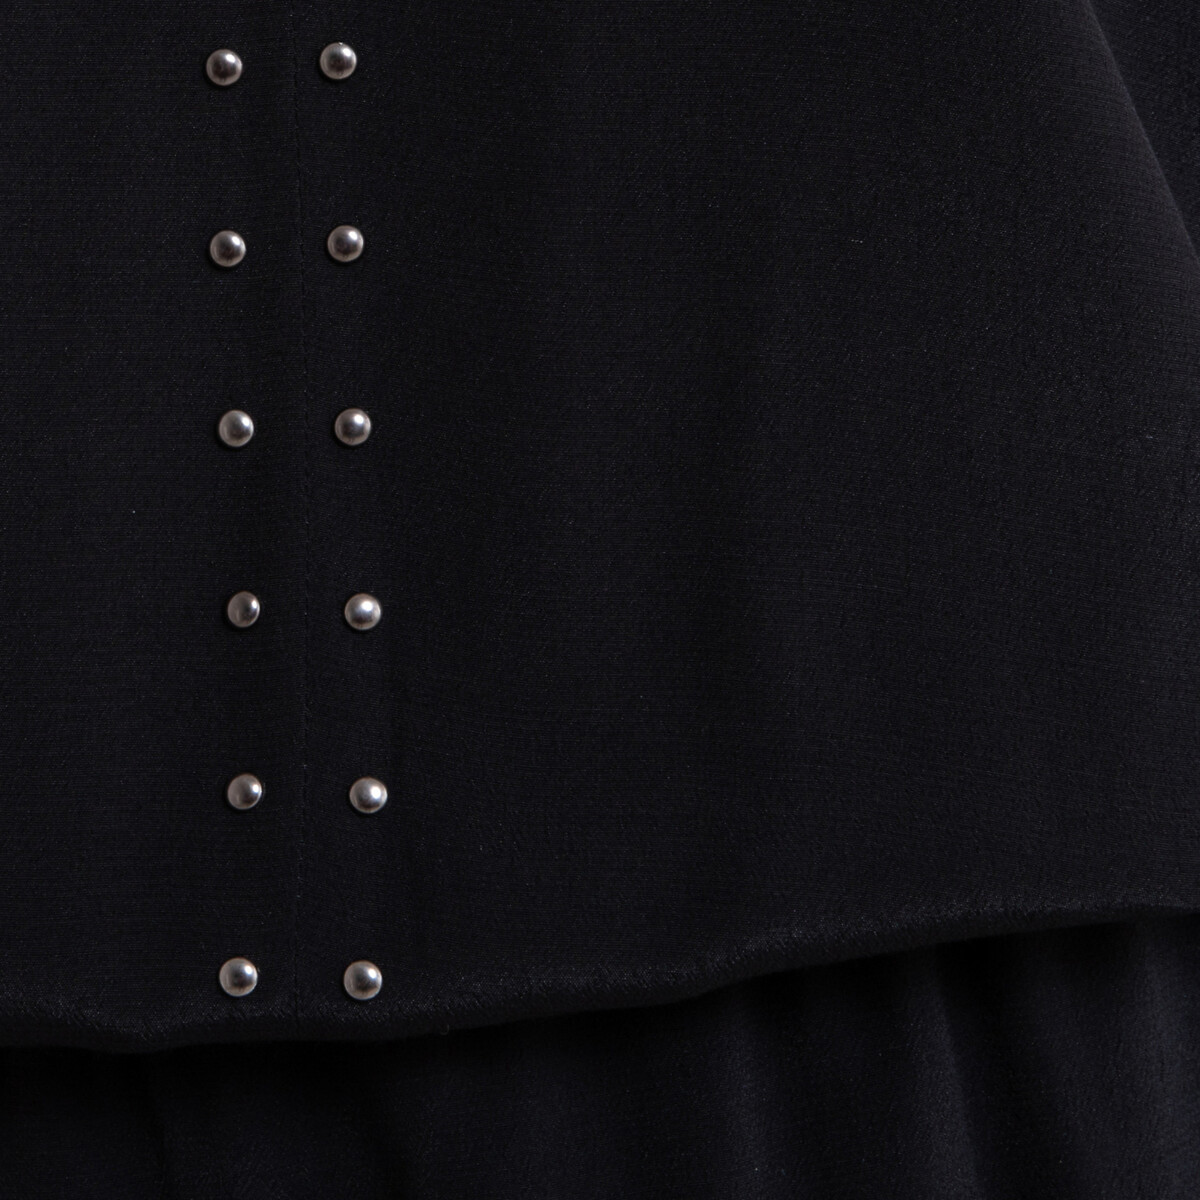 Платье La Redoute Расклешенное длина миди 34 40 (FR) - 46 (RUS) черный, размер 40 (FR) - 46 (RUS) Расклешенное длина миди 34 40 (FR) - 46 (RUS) черный - фото 4